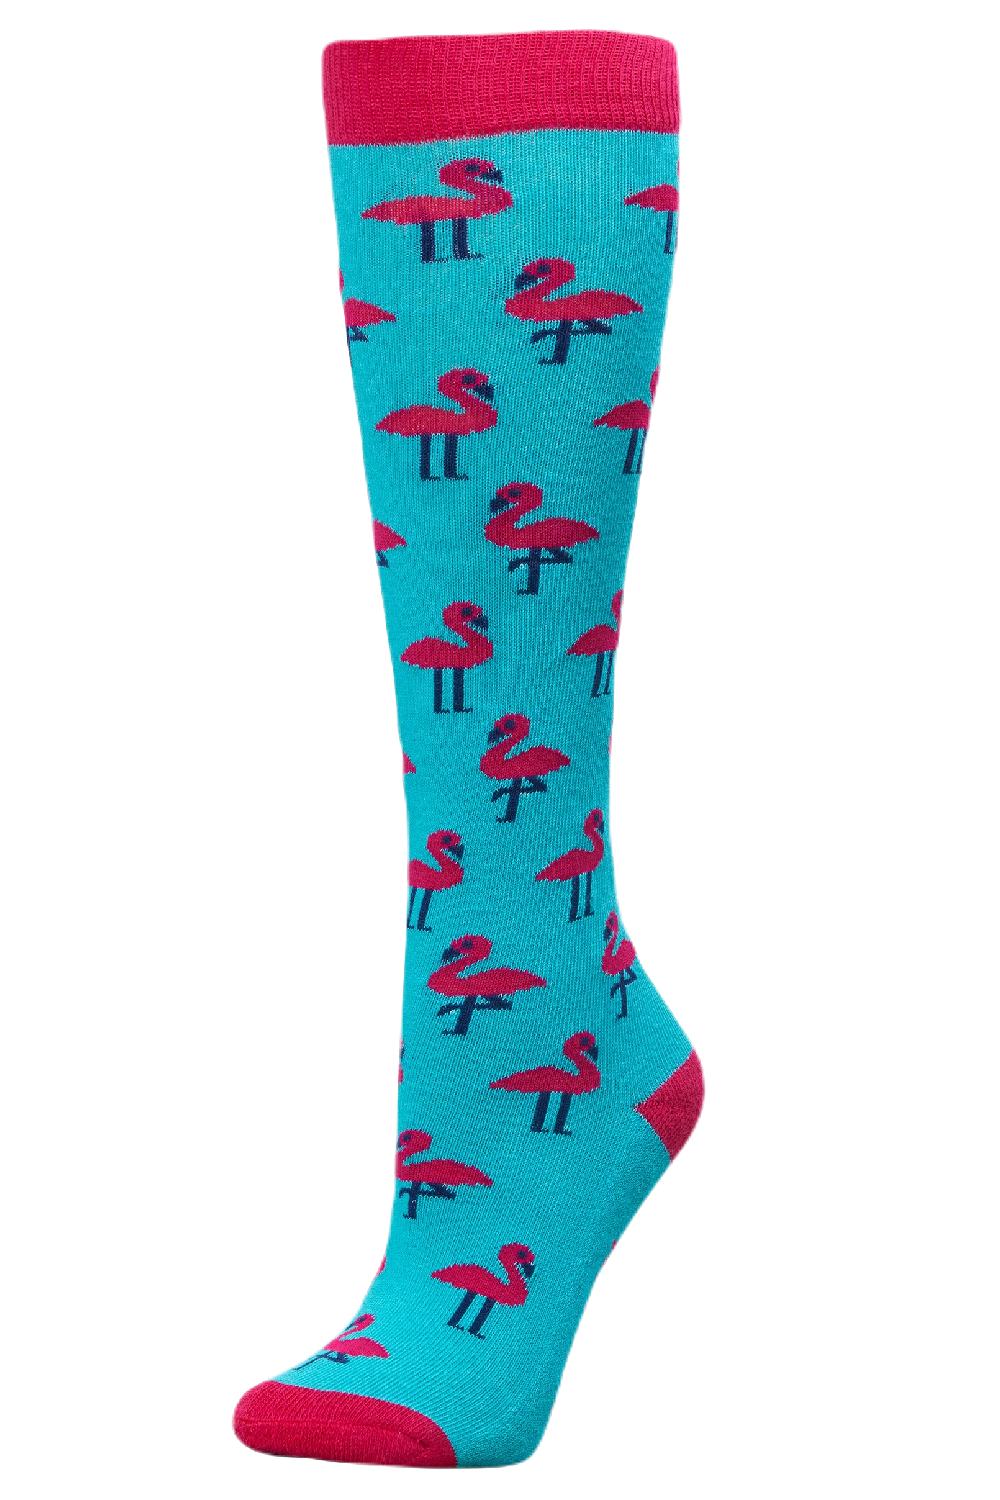 Dublin Single Pack Socks - Aqua Flamingos 